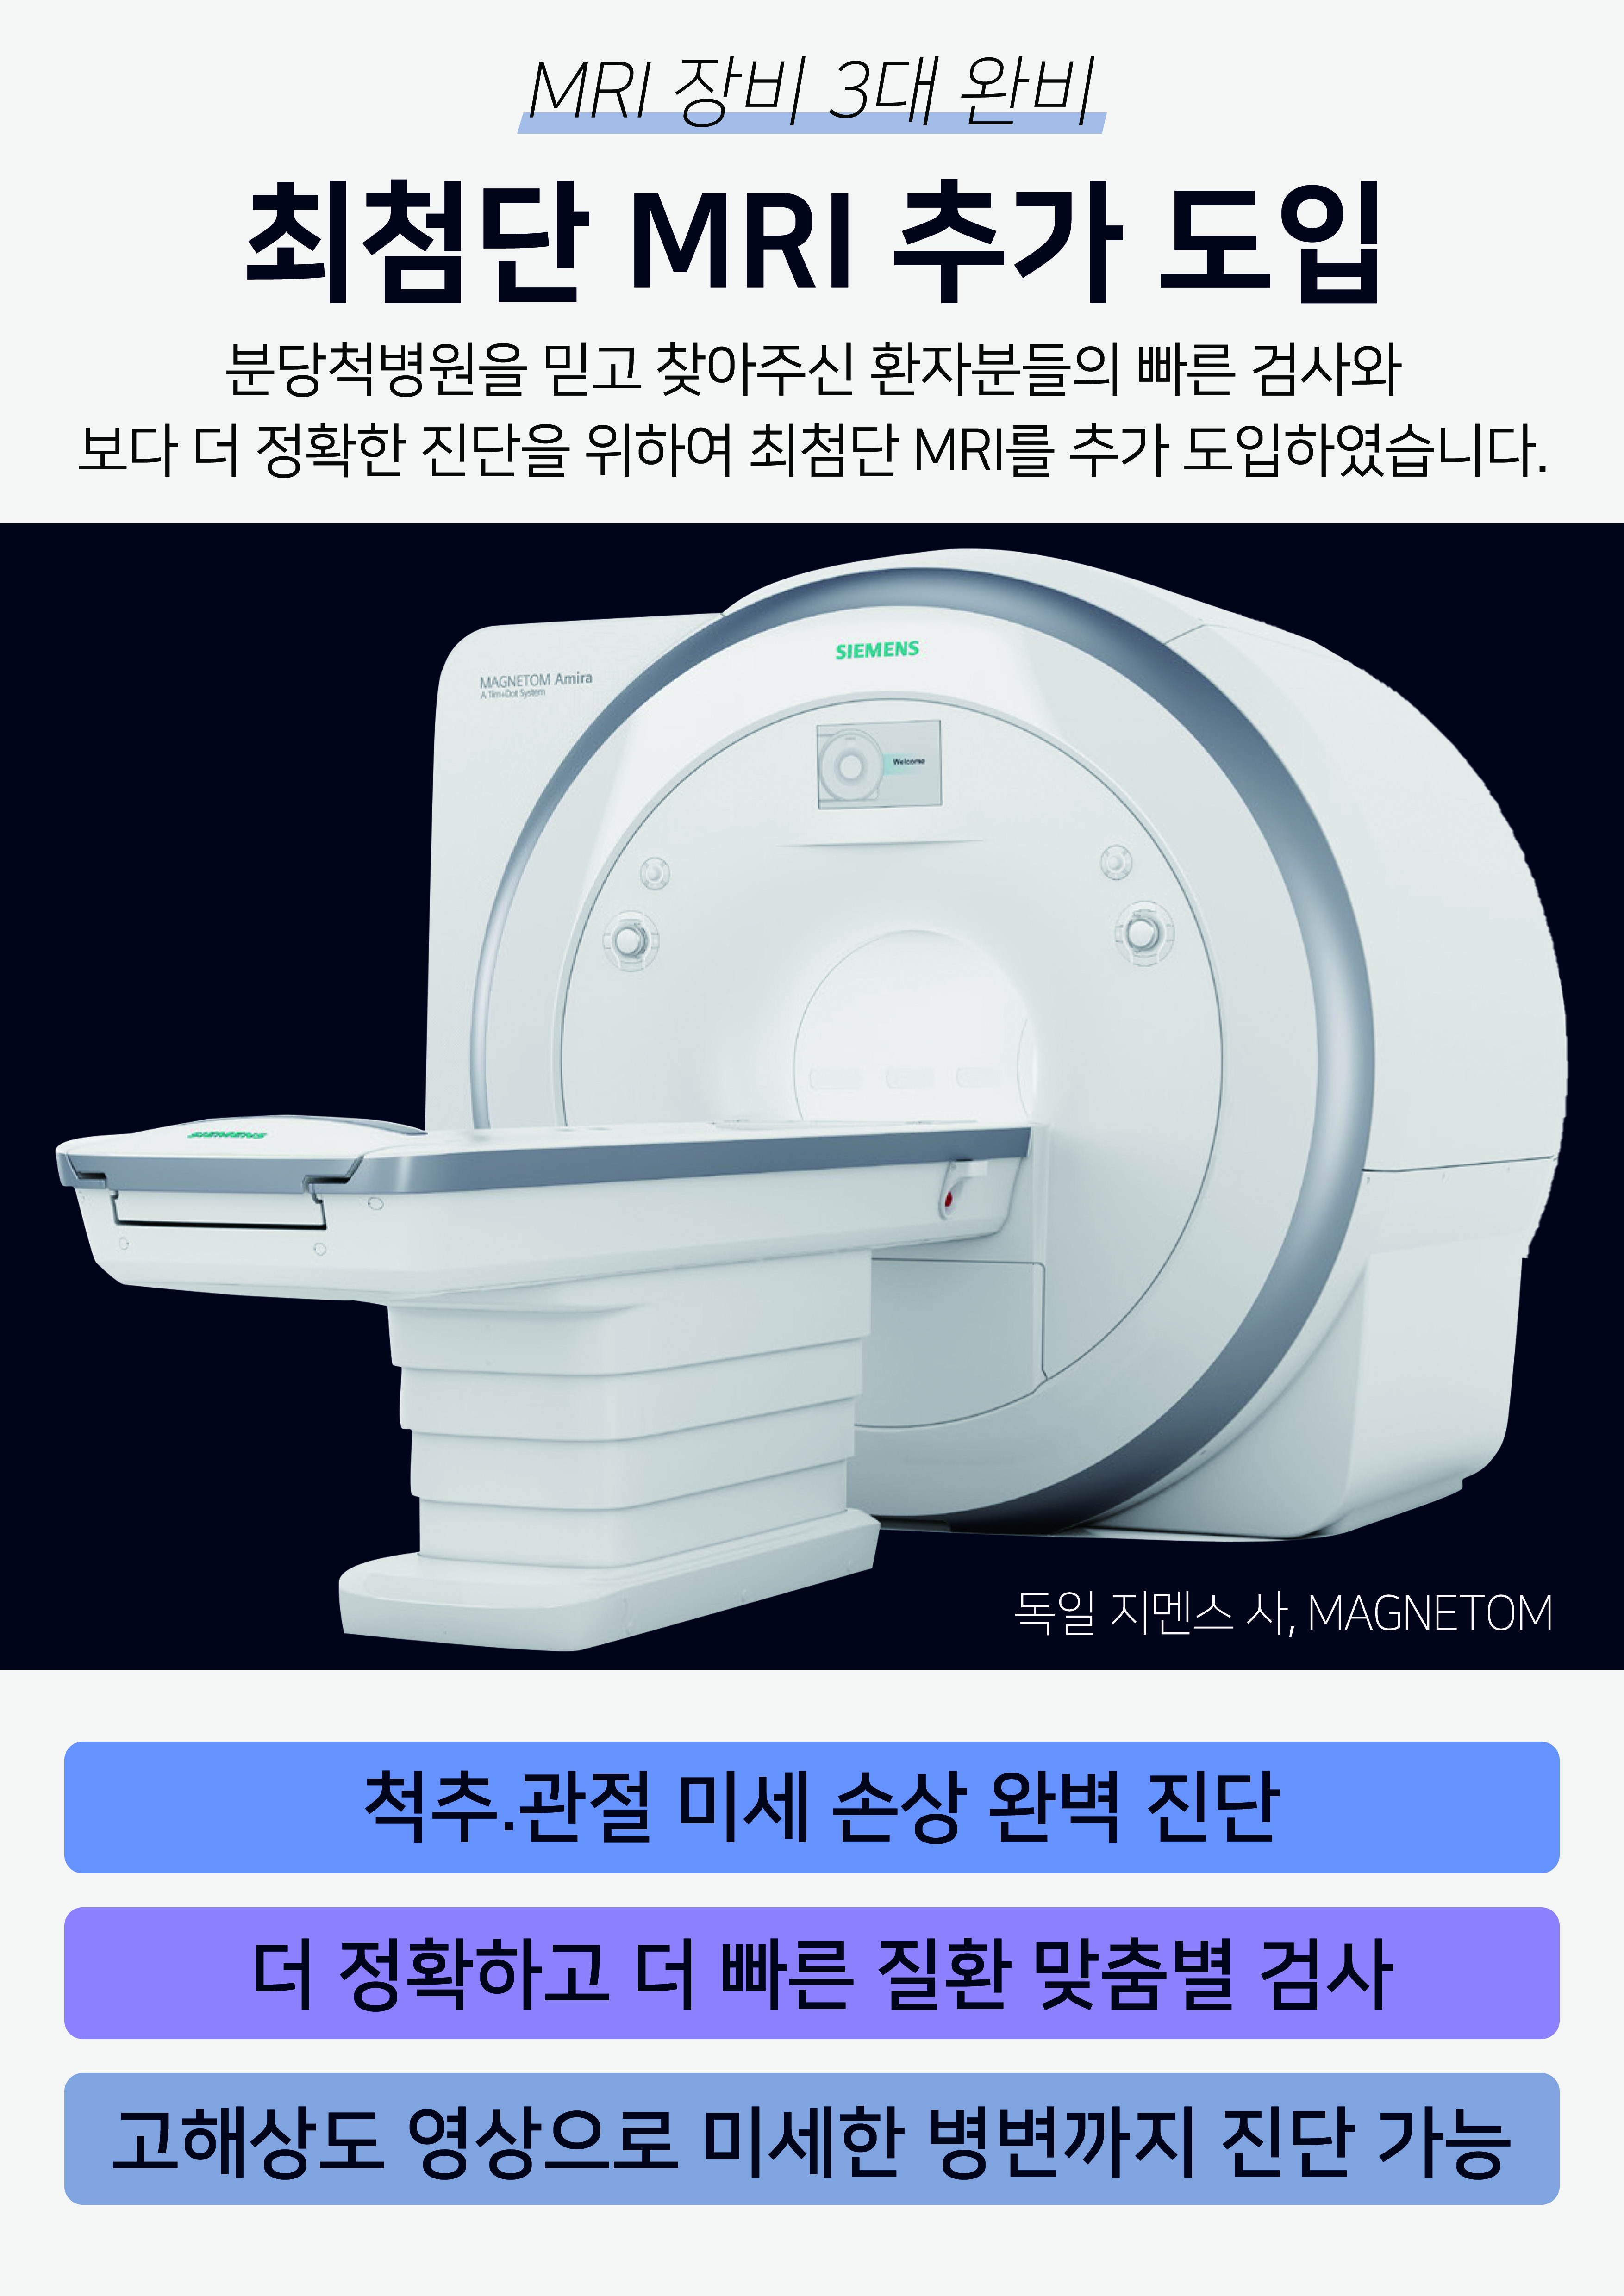 최첨단 1.5T MRI 추가 도입